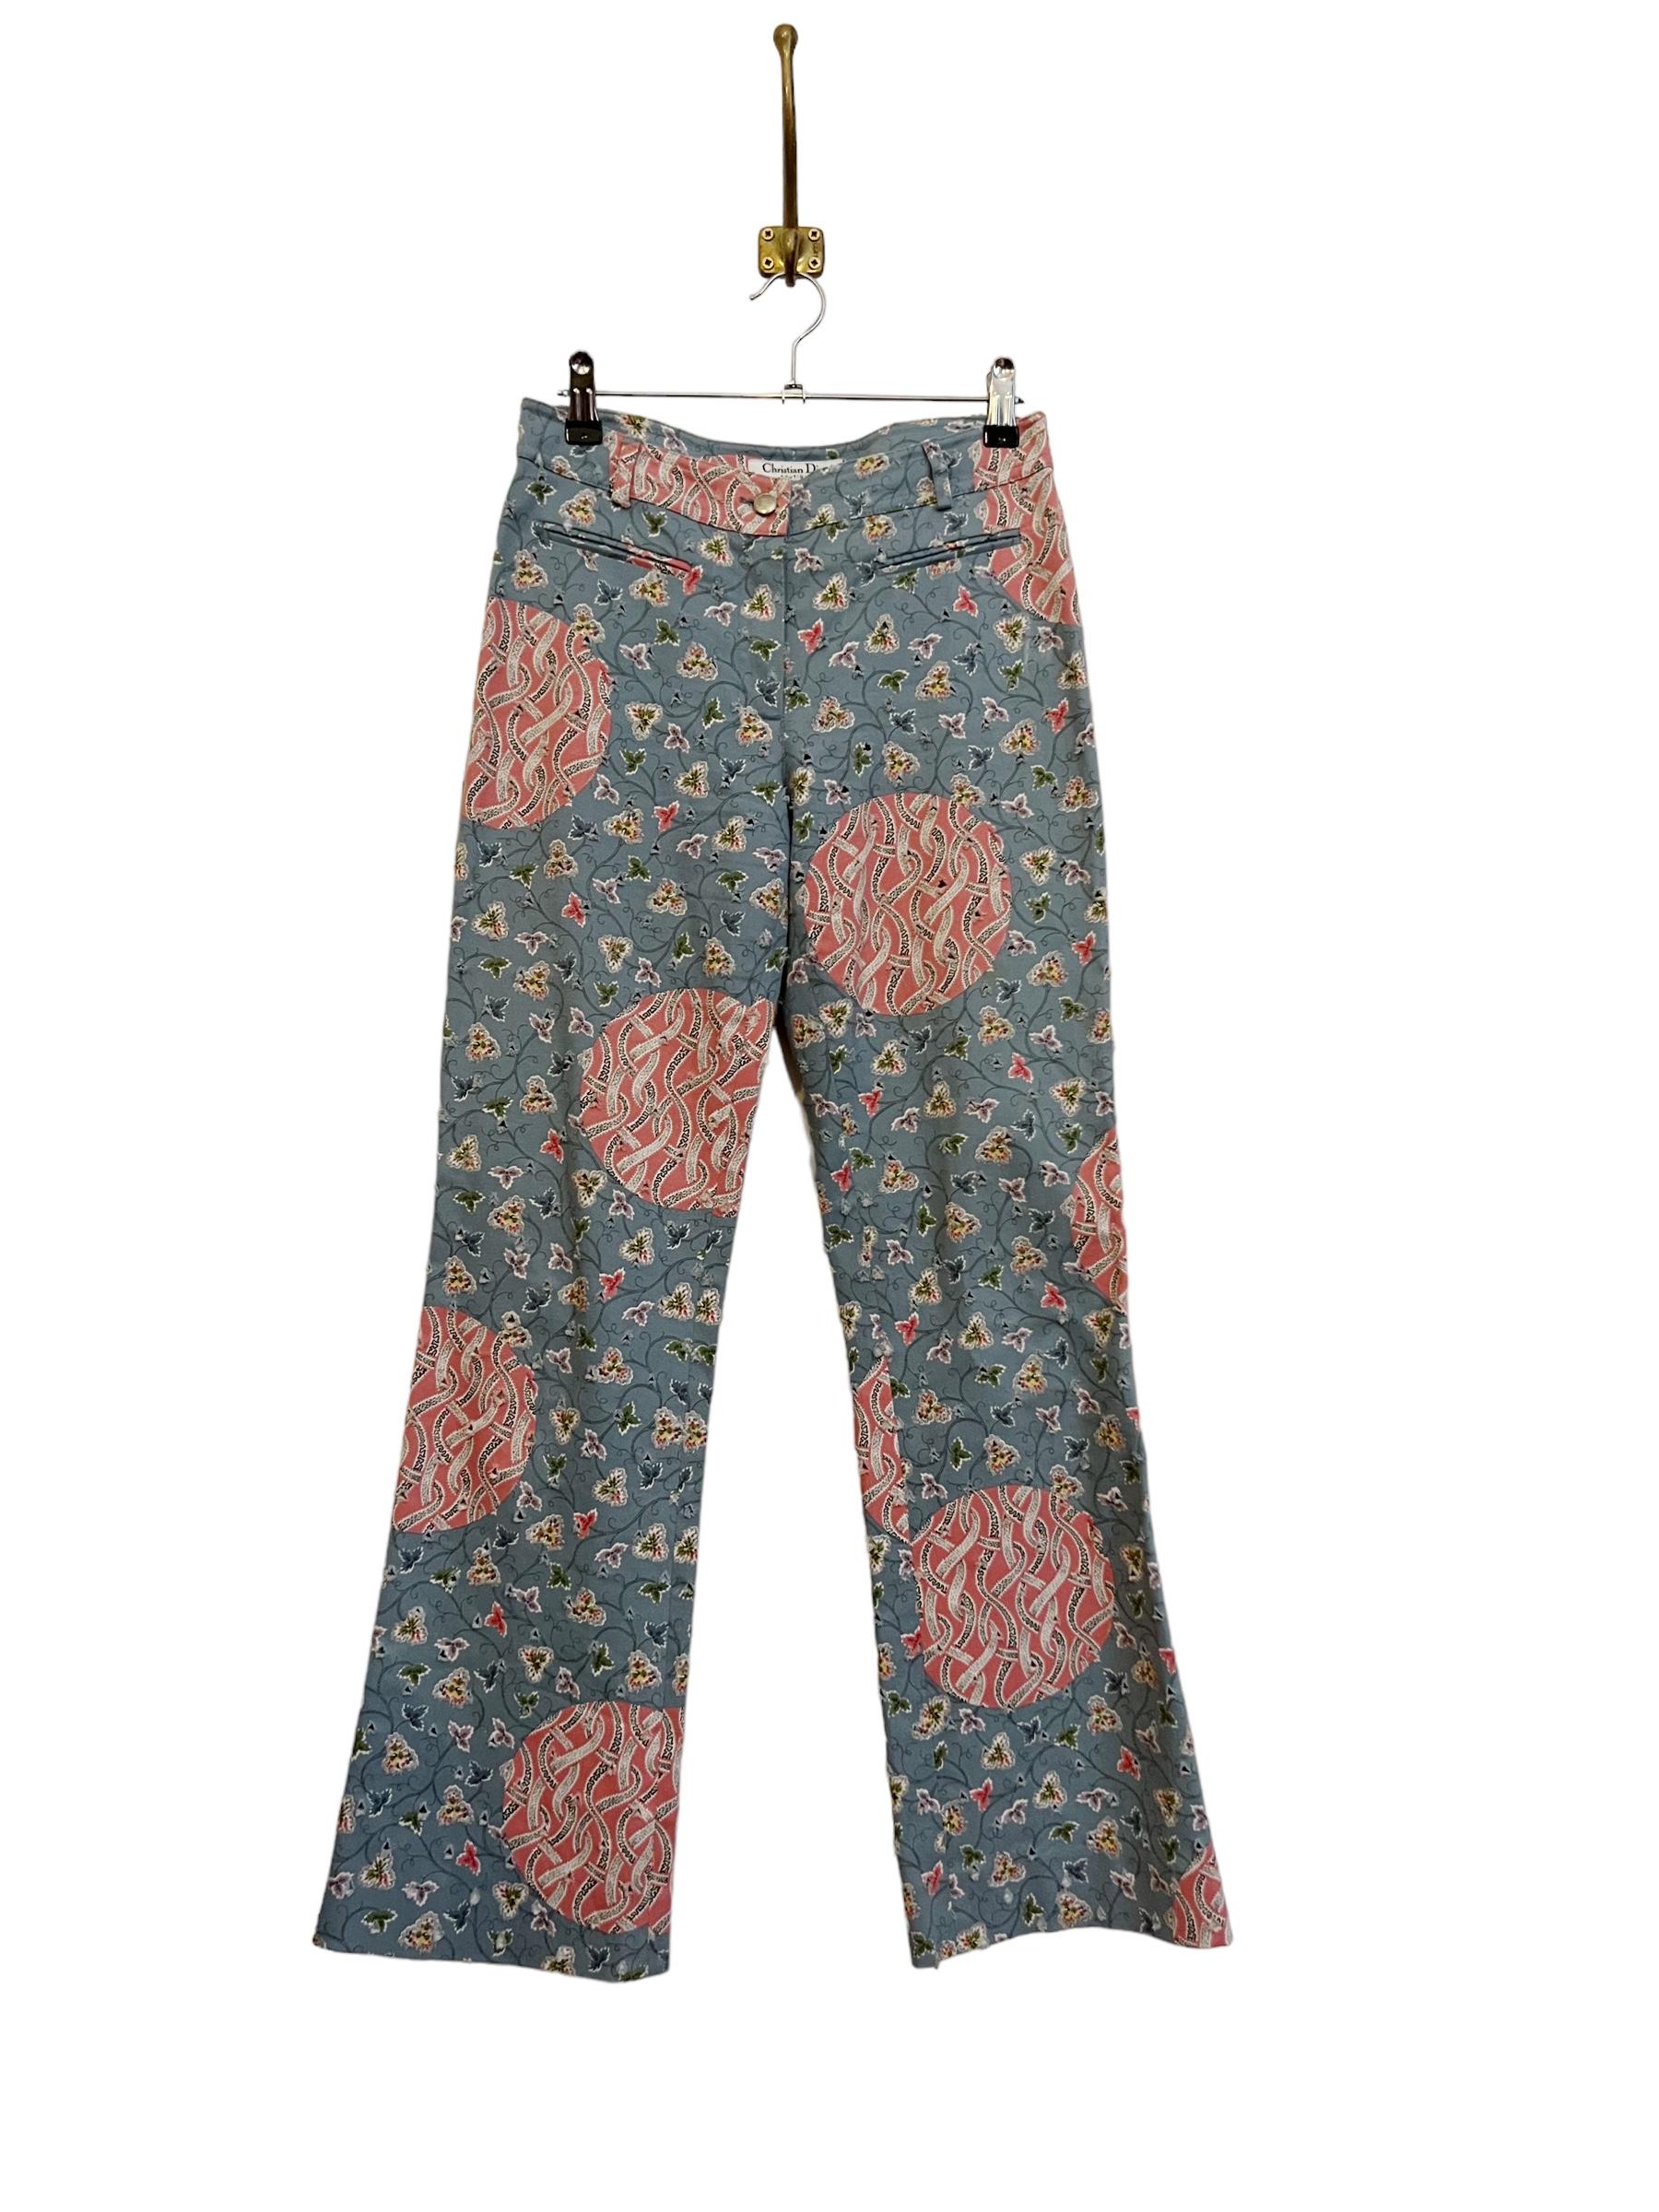 Pantalon Christian Dior de l'époque Galliano dans un magnifique tissu à motifs de fleurs avec une texture perforée de style vieilli. 

FABRIQUÉ EN FRANCE 

Caractéristiques : 
Bouton / Fermeture à glissière
2 poches frontales
Faible élévation